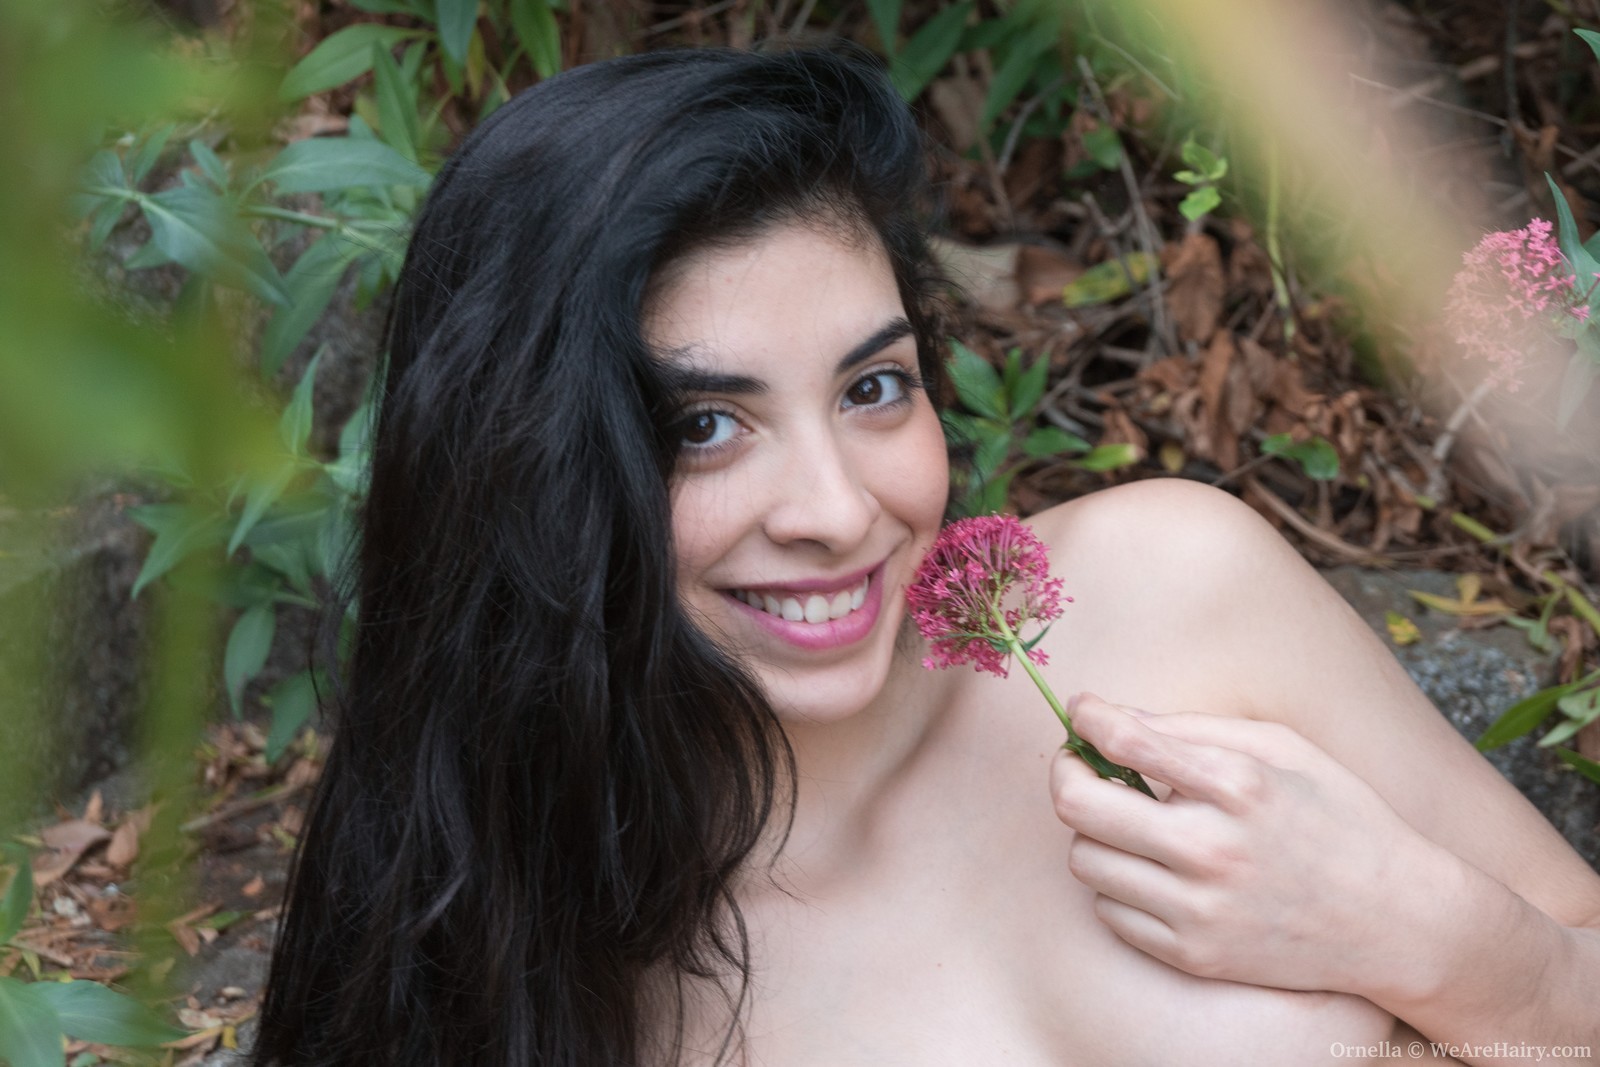 Ornella strippt im Freien mit einer sexy Rose in der Hand
 #78539201